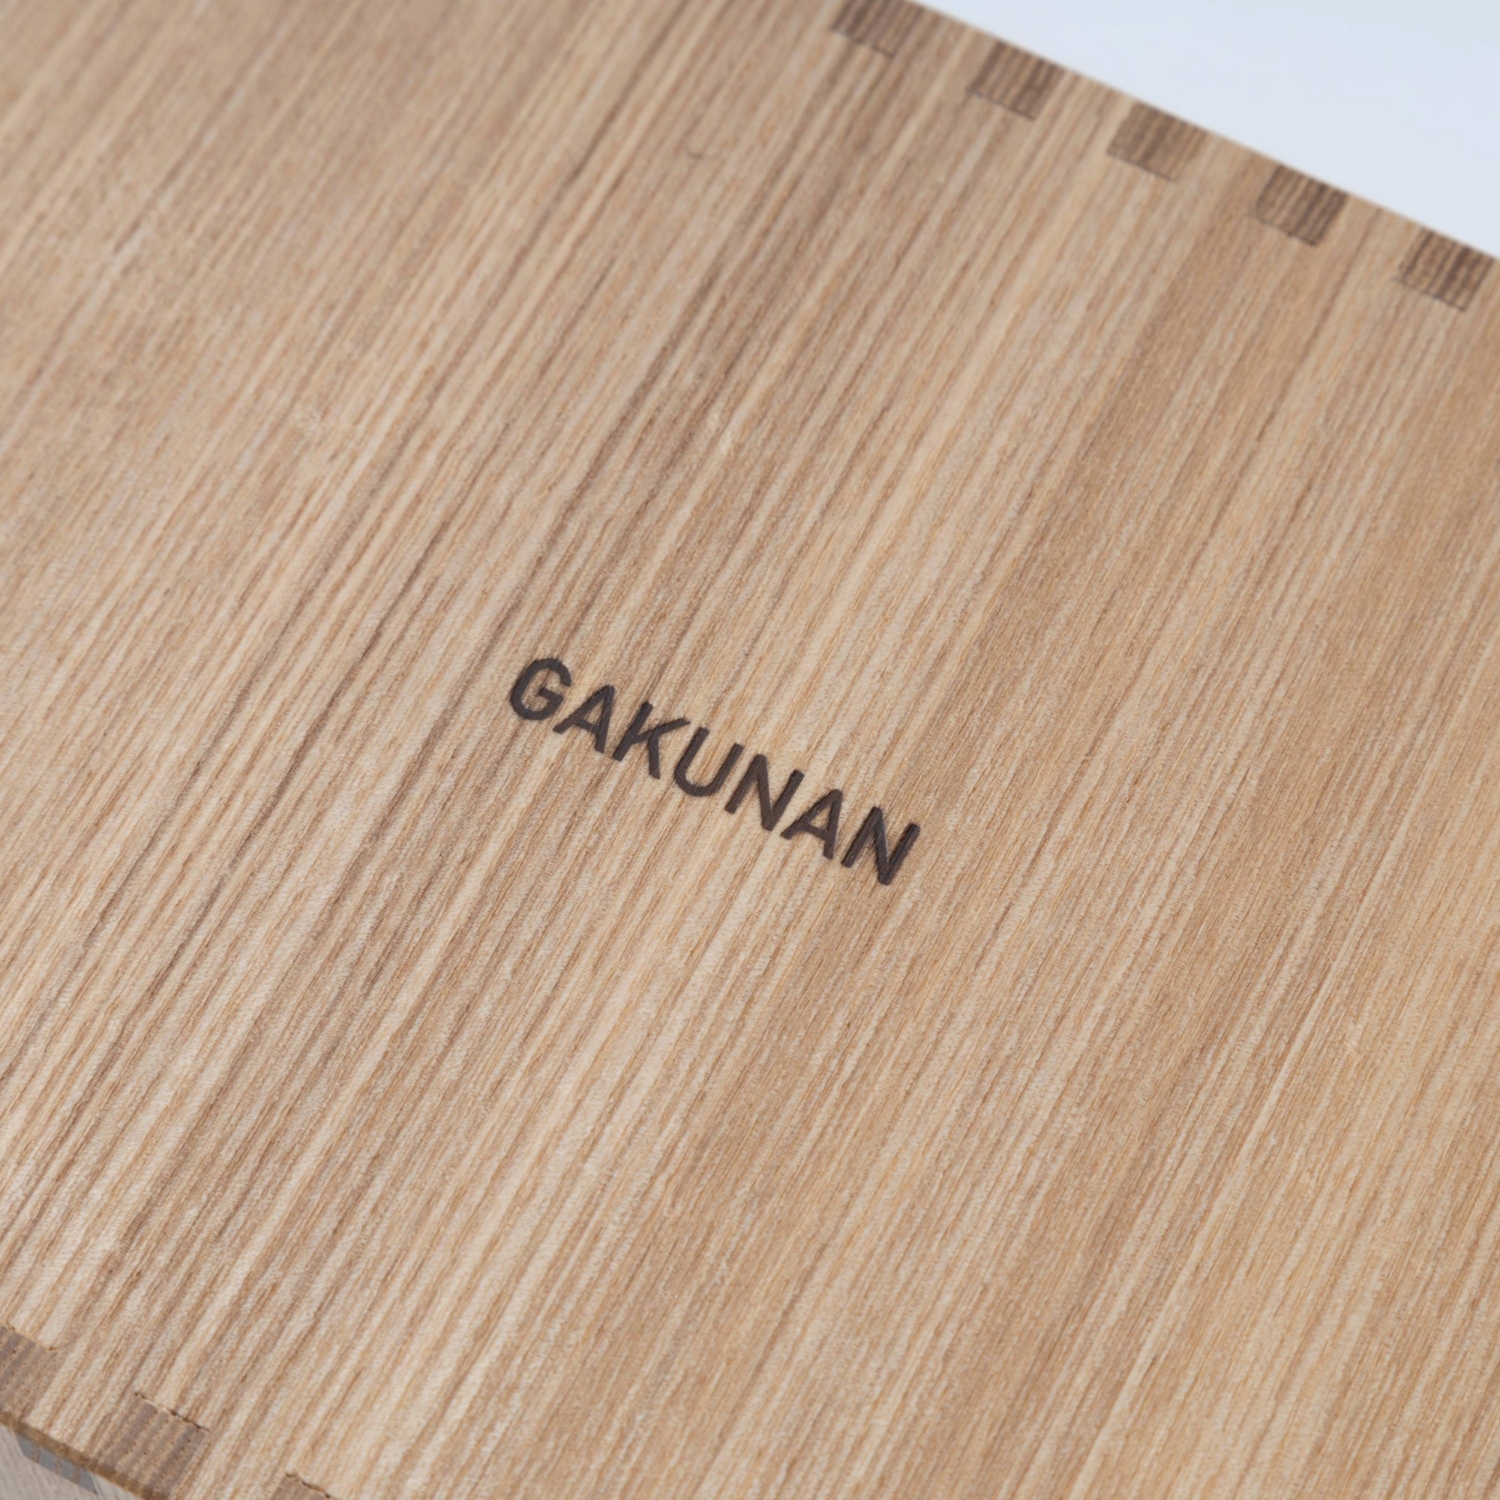 GAKUNAN/タモ柾目のティッシュケース スリット